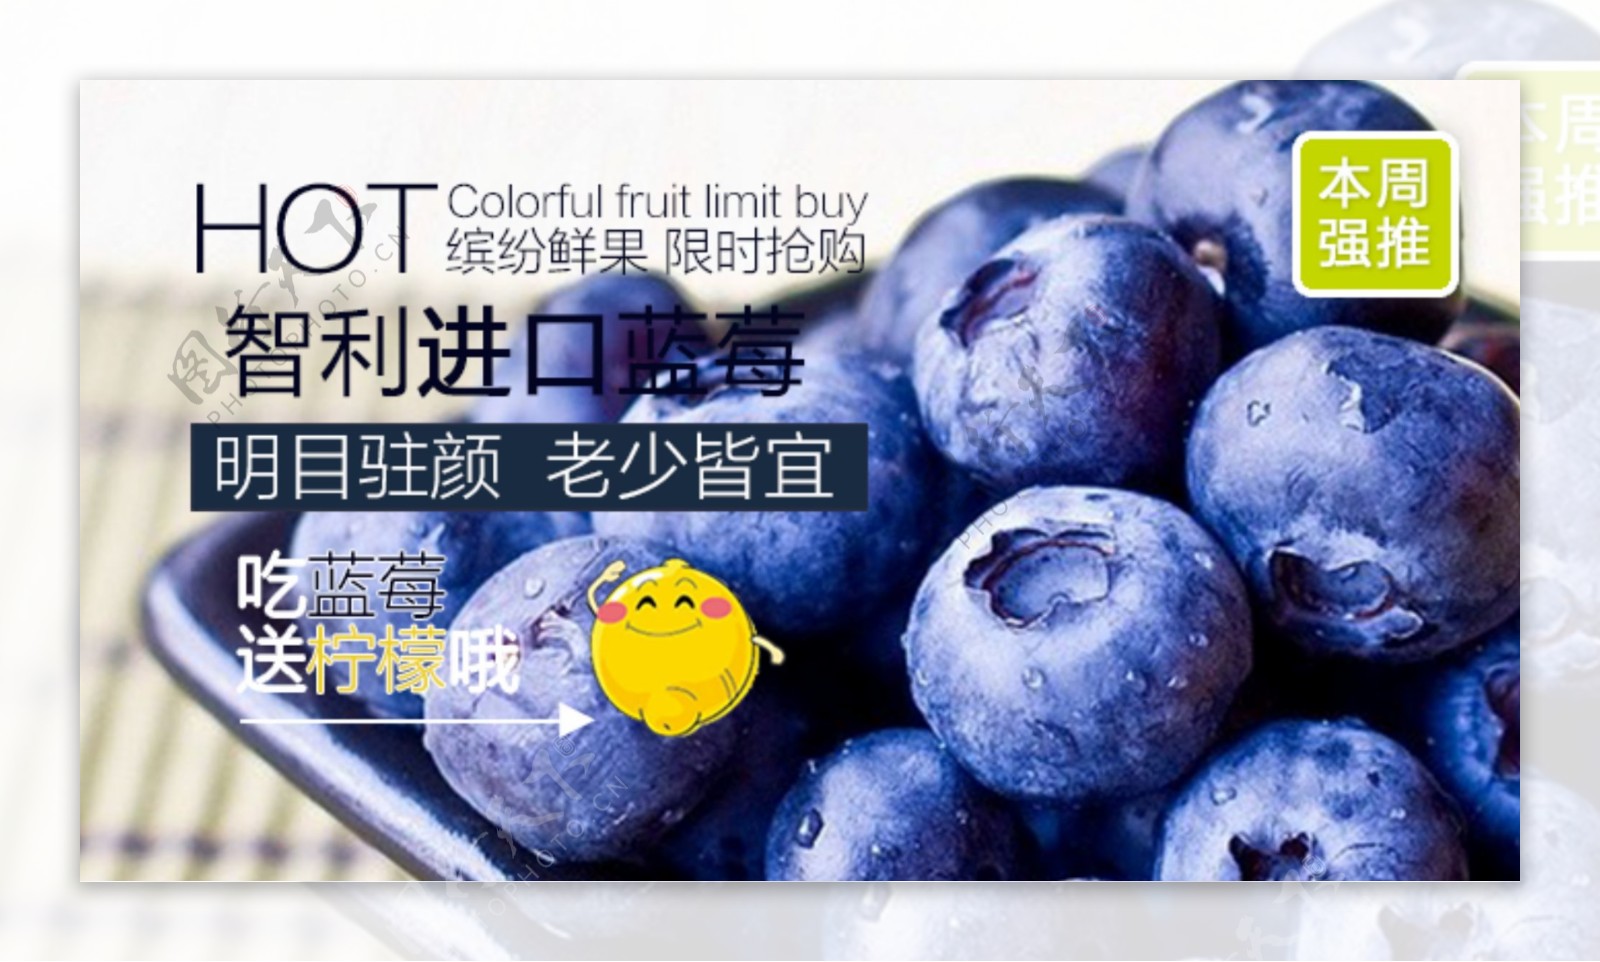 蓝莓广告